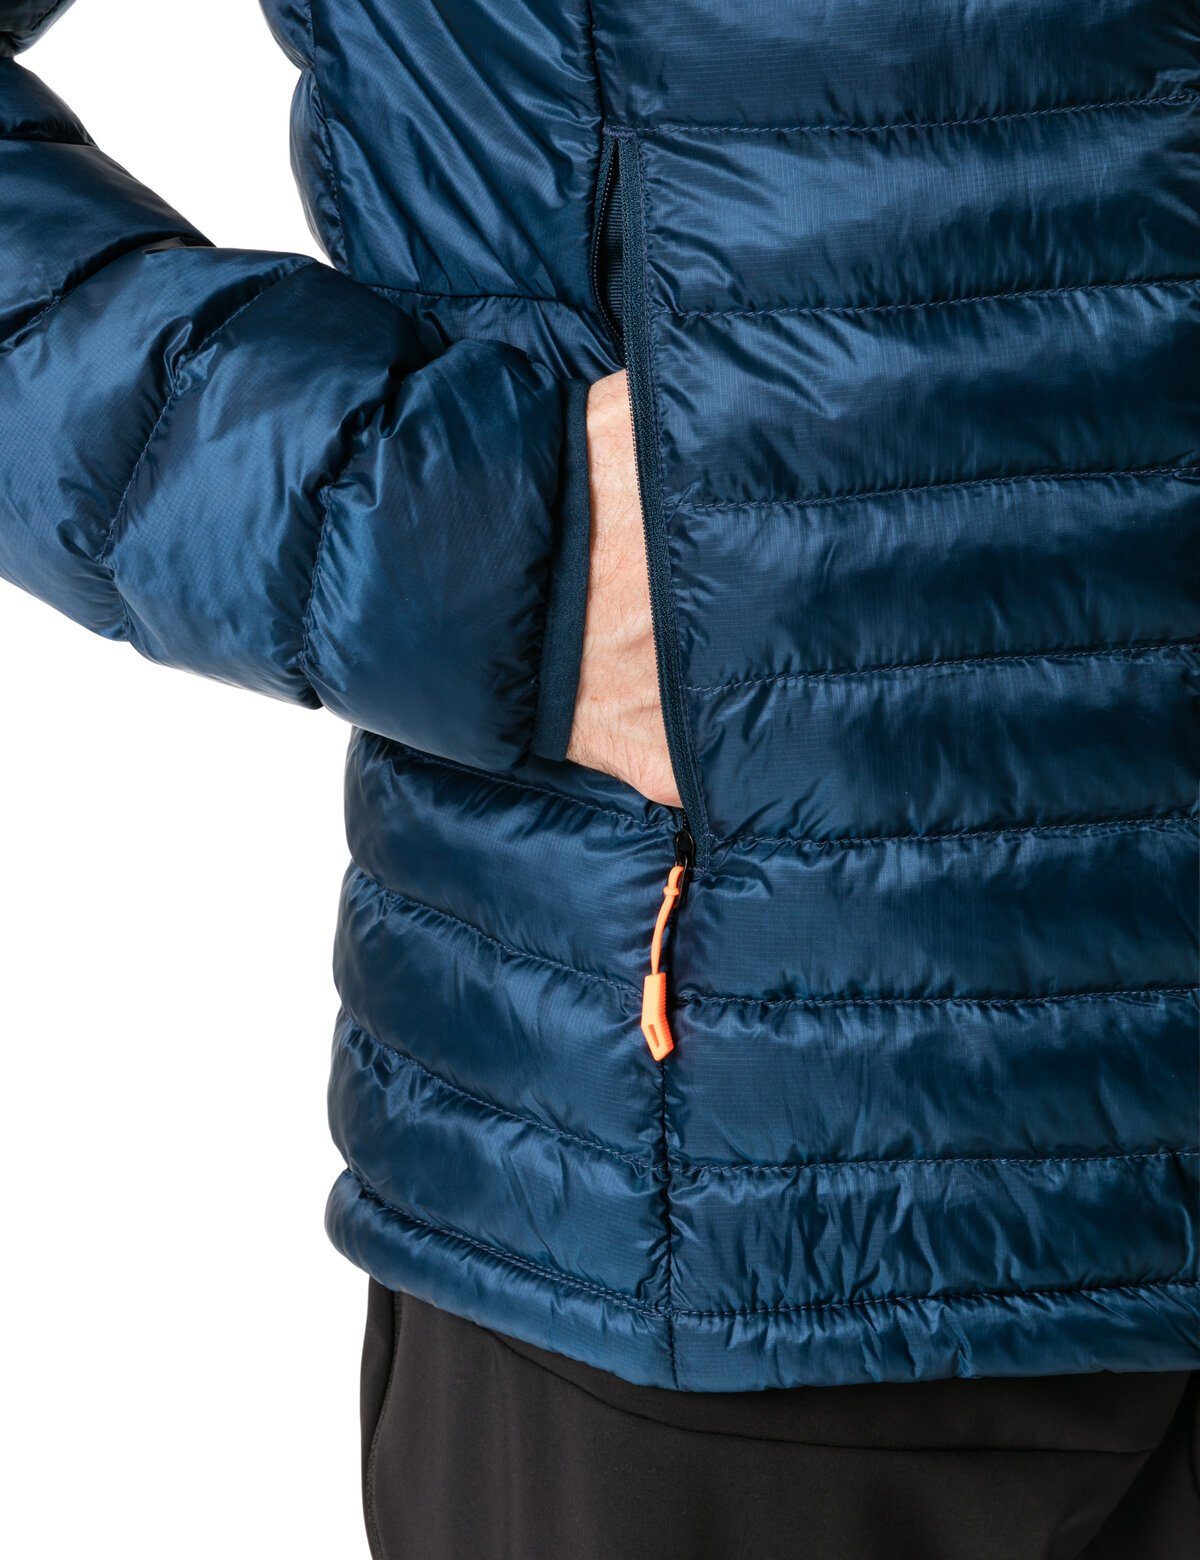 VAUDE Outdoorjacke Men's Batura Insulation kompensiert dark Klimaneutral sea (1-St) Jacket